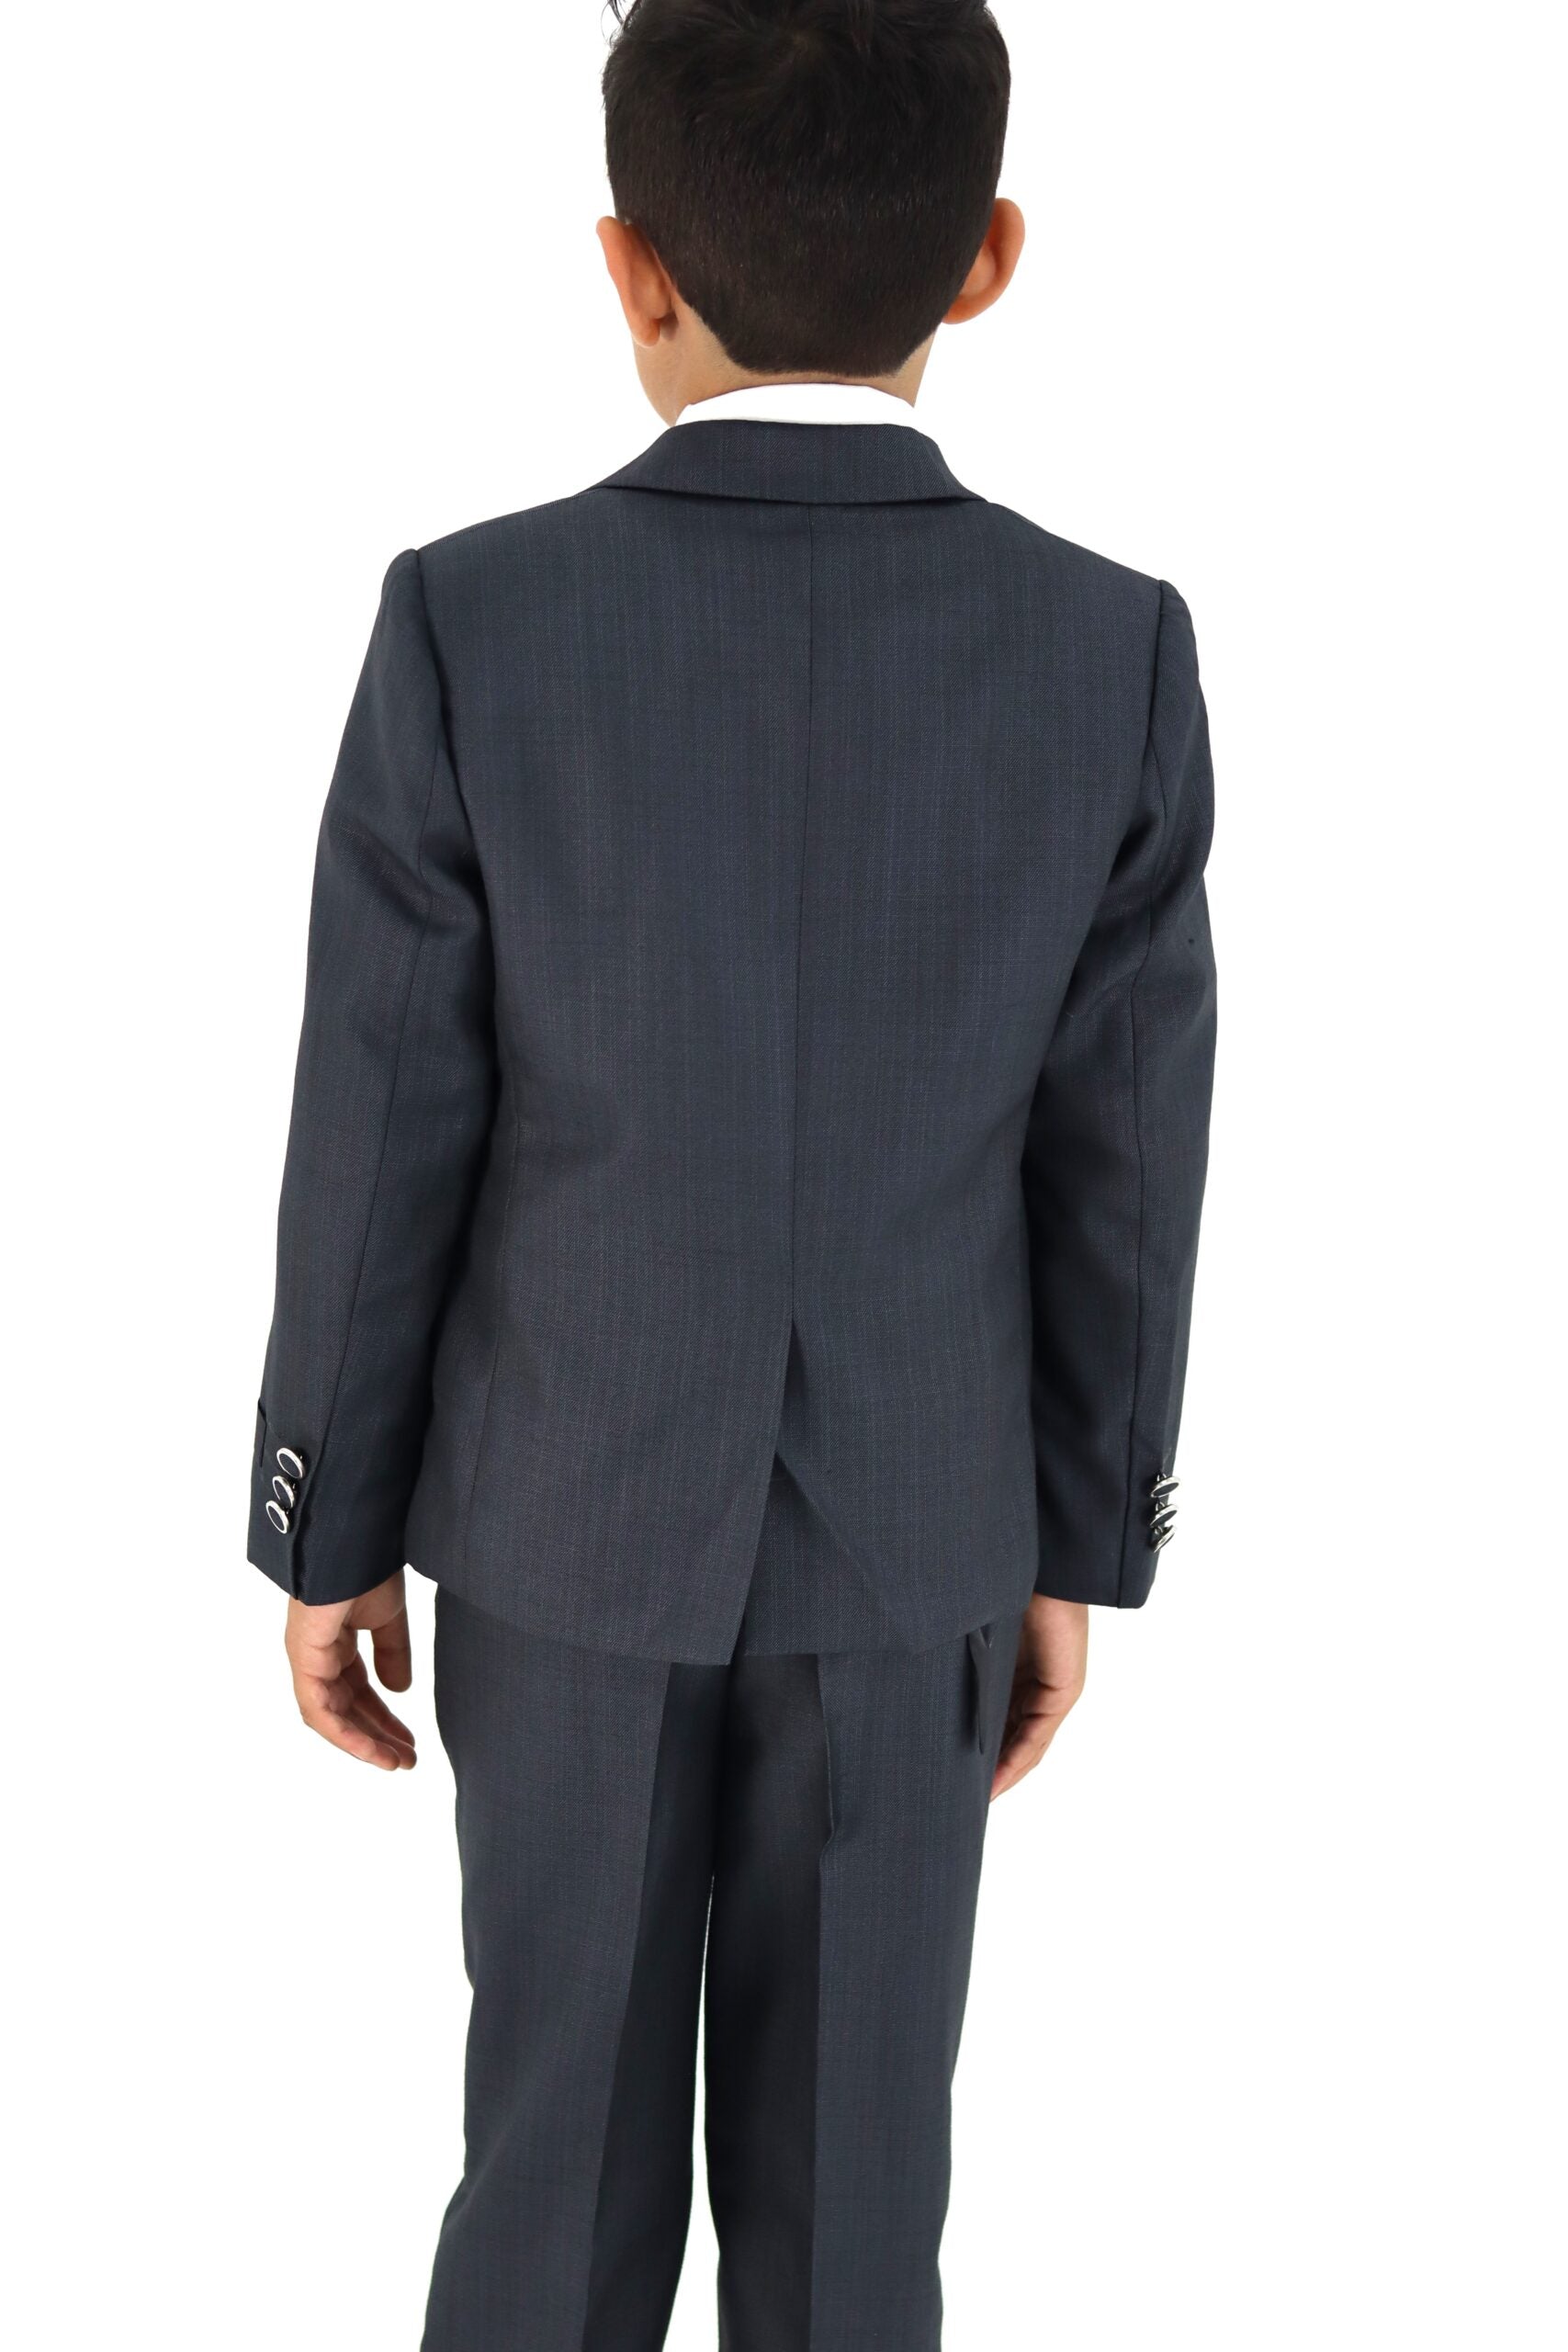 Boy Slim Fit Grey Suit 3Pc Set